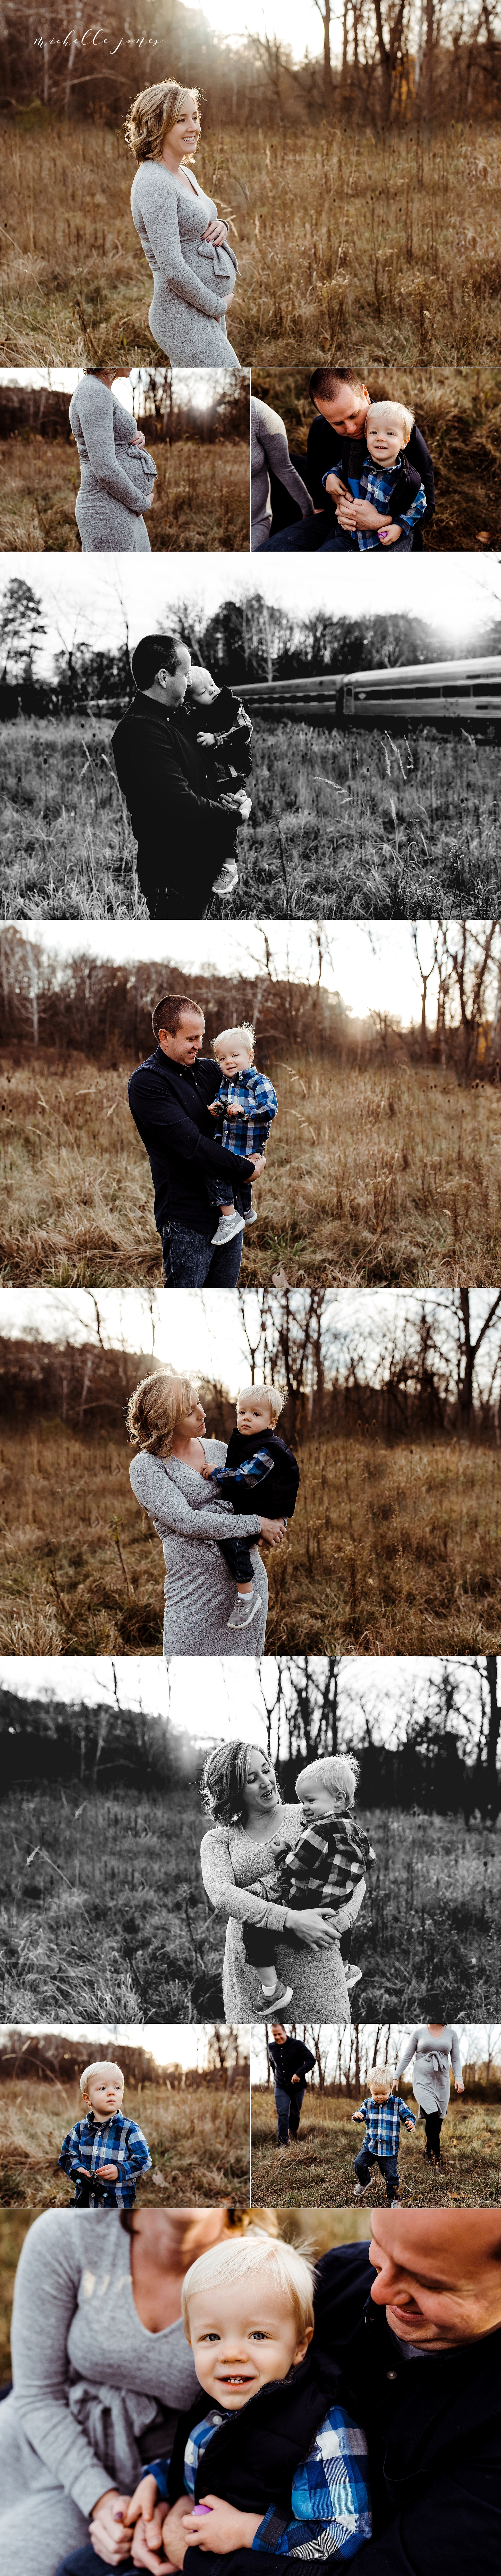 Cleveland Family Photographers